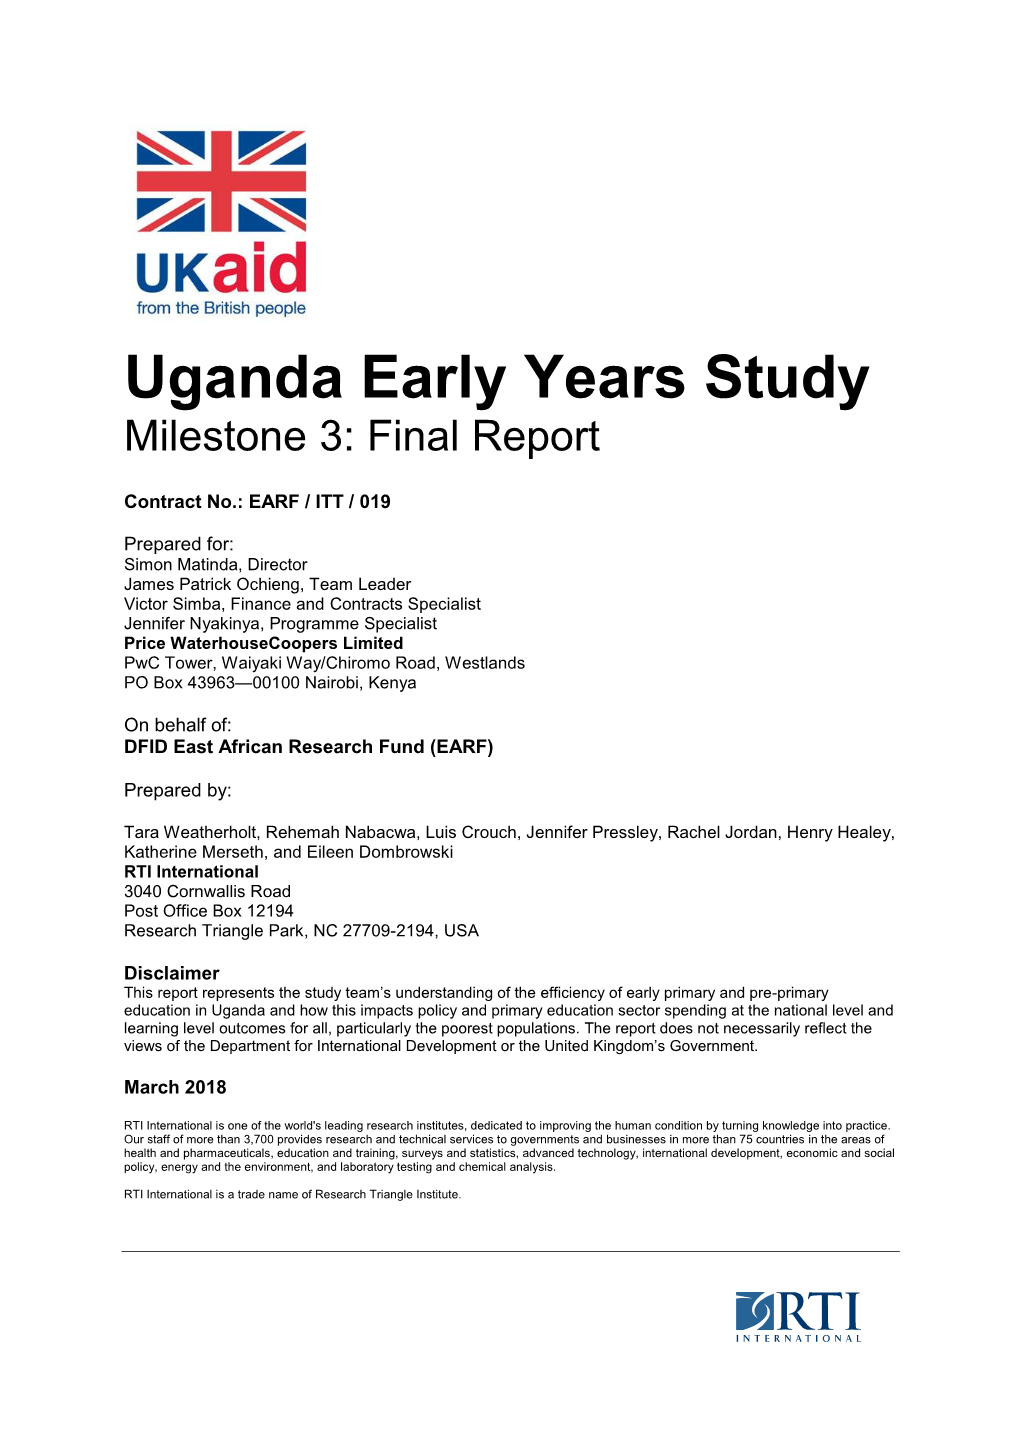 Uganda Early Years Study Milestone 3: Final Report